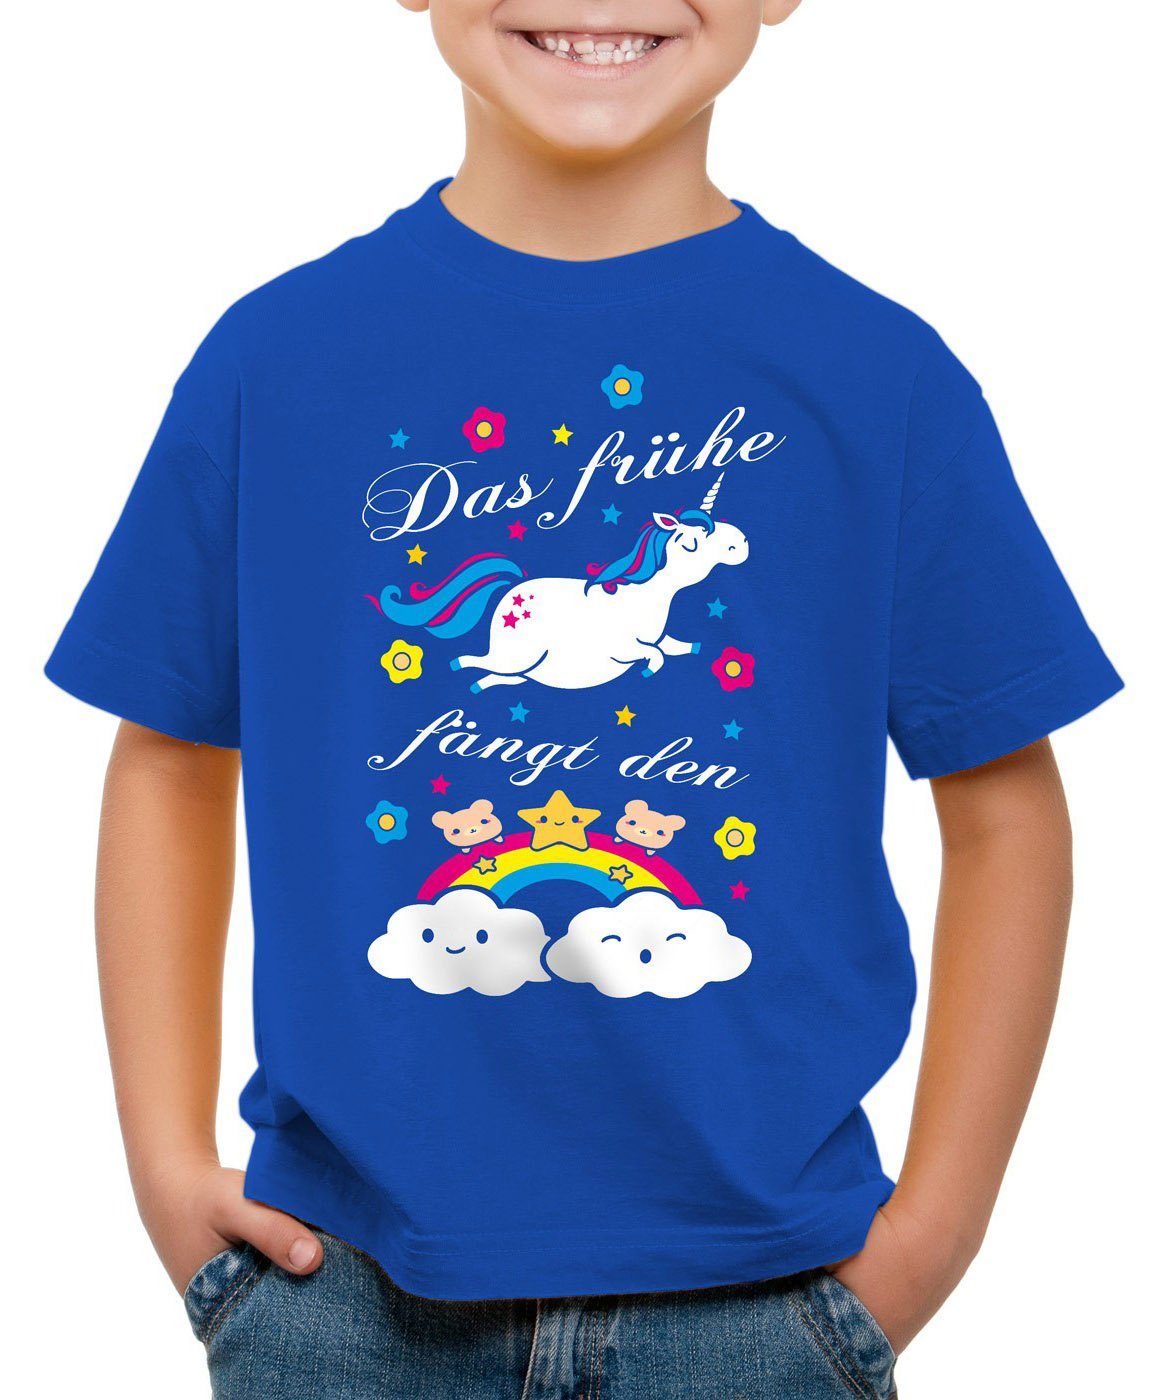 style3 Print-Shirt Kinder Unicorn blau Das Regenbogen bärchen spruch Einhorn T-Shirt süß fängt frühe fun